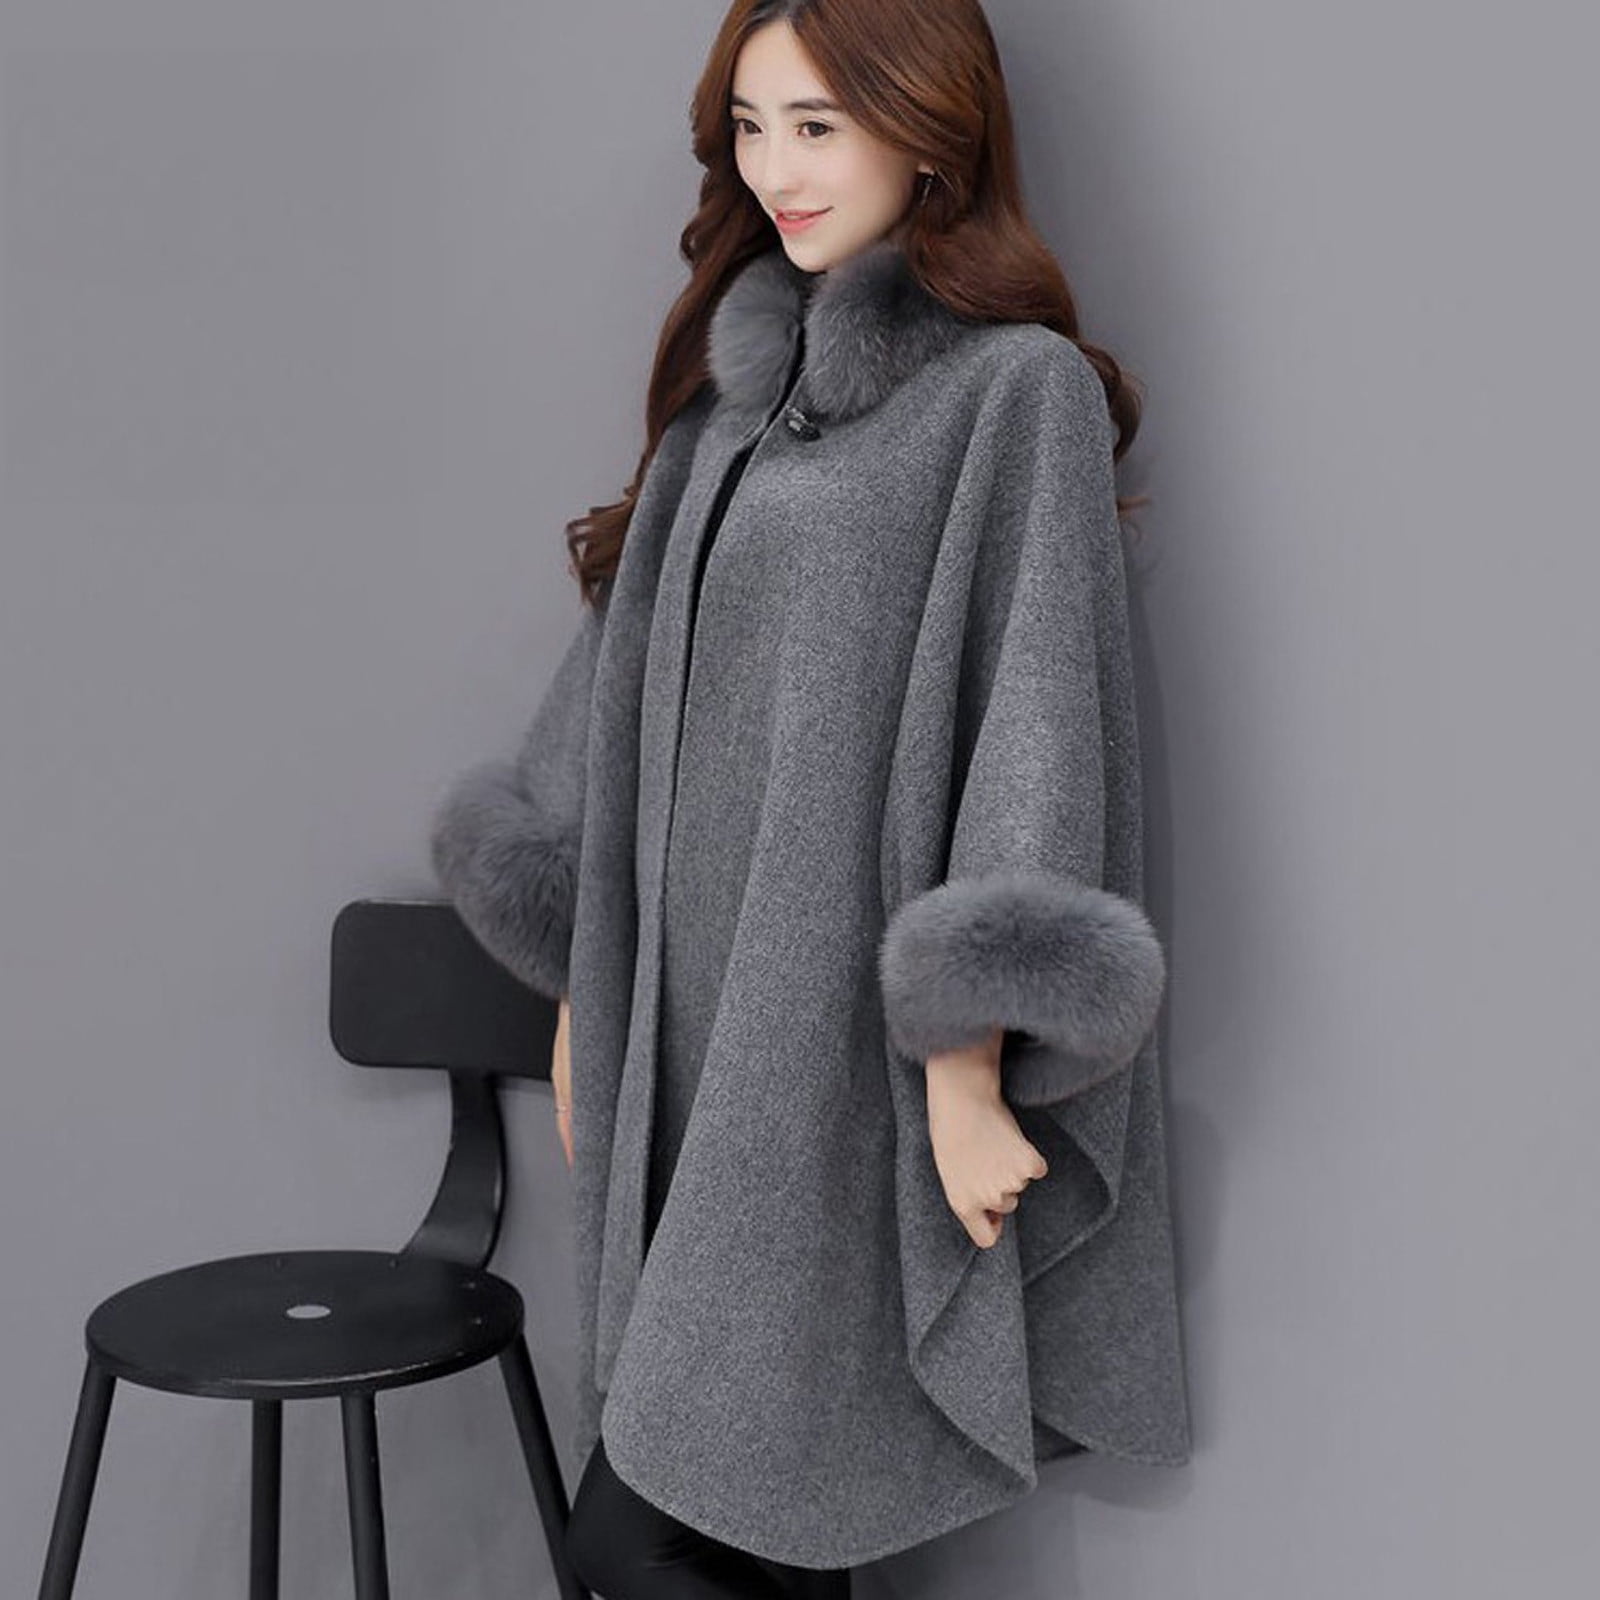 Women Winter  Jacket Casual Woollen Outwear Fur Collar Parka Cardigan Cloak Coat